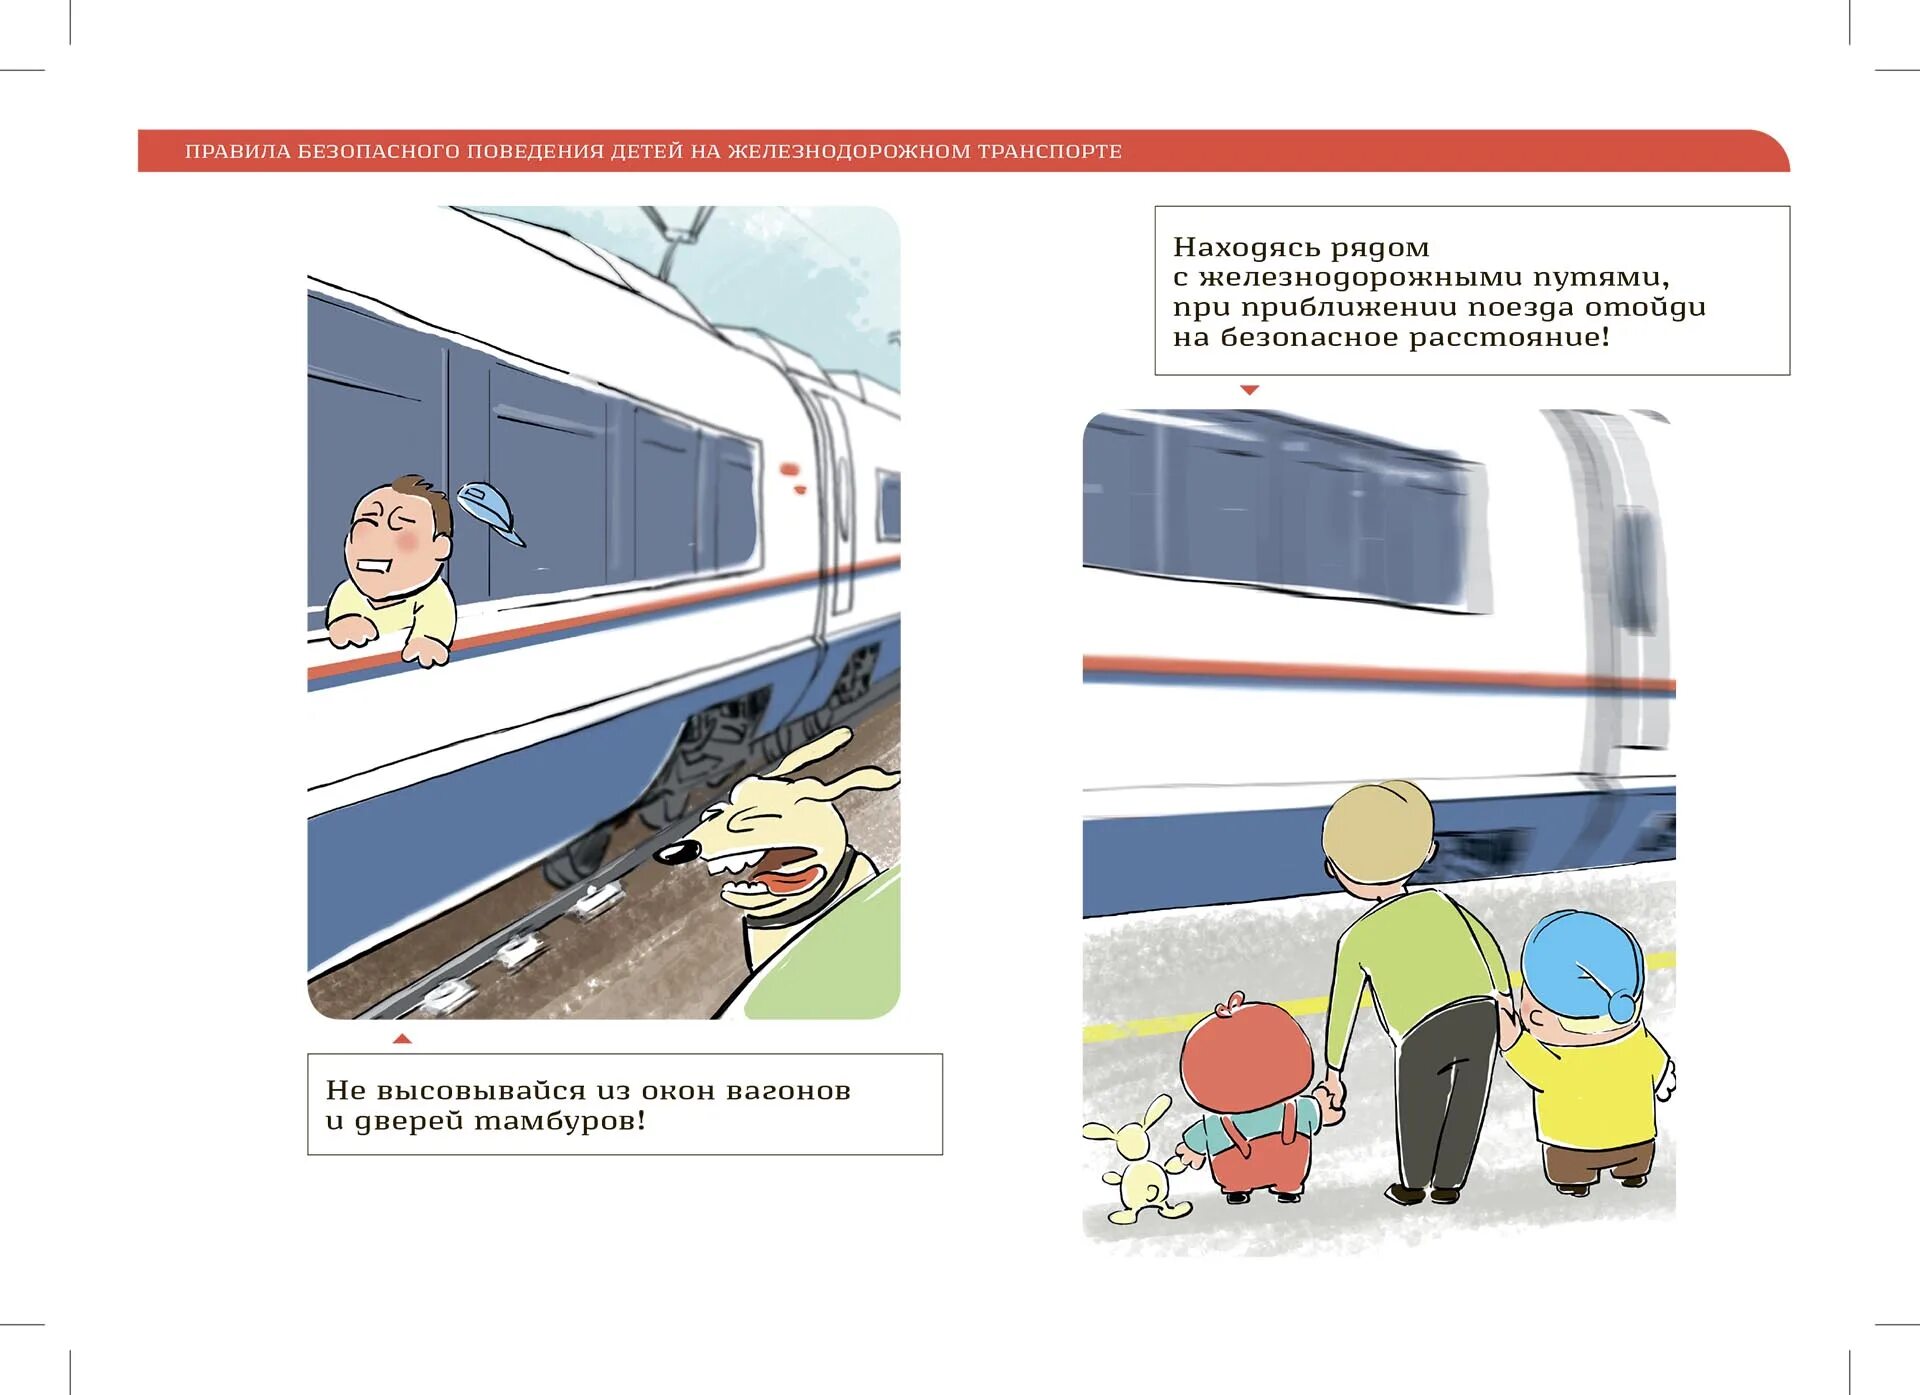 Презентация безопасное поведение пассажиров железнодорожного транспорта. РЖД безопасность на железной дороге. Безопасность поведения на Железнодорожном транспорте. Безопасное поведение детей на Железнодорожном транспорте. Безопасное поведение на железной дороге.